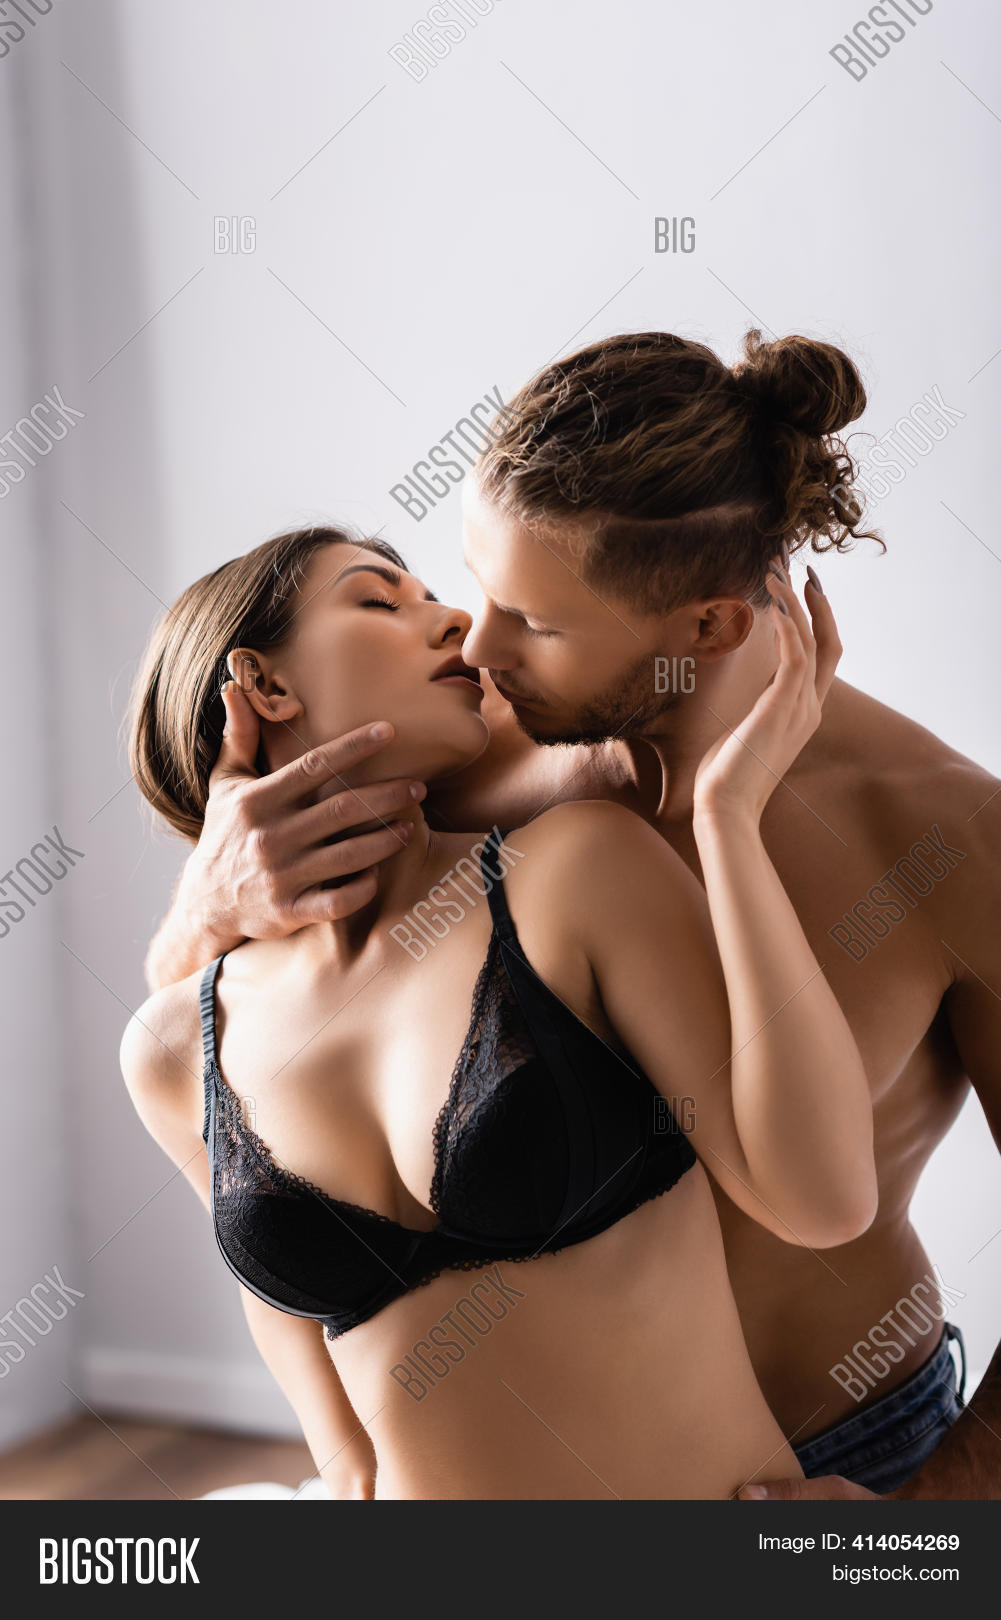 andrea galambos add sexy hot kiss photo